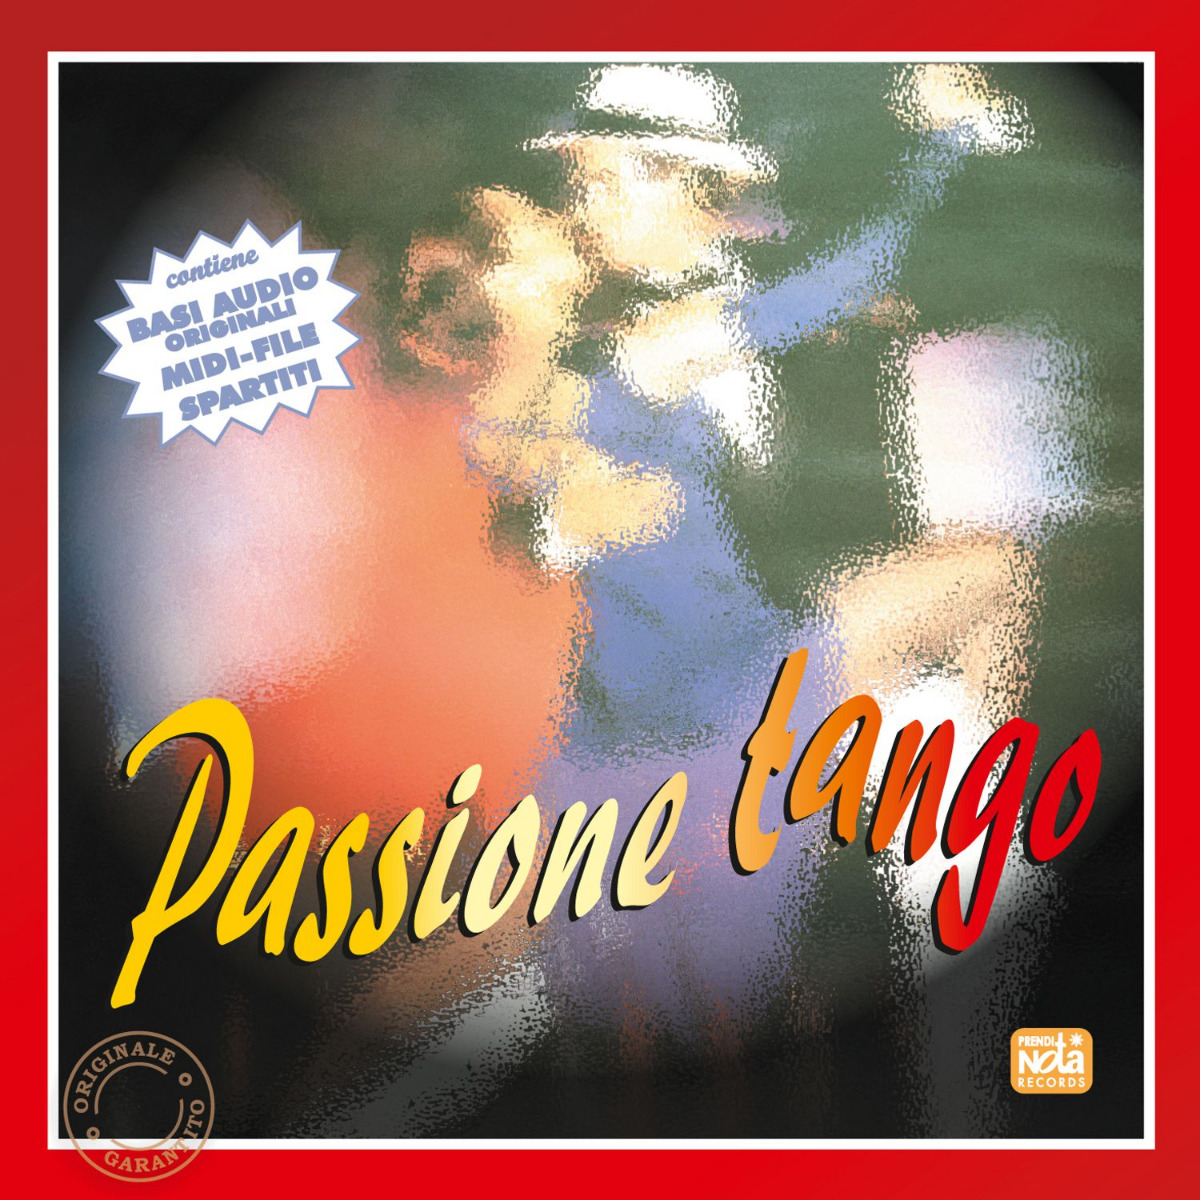 Passione tango